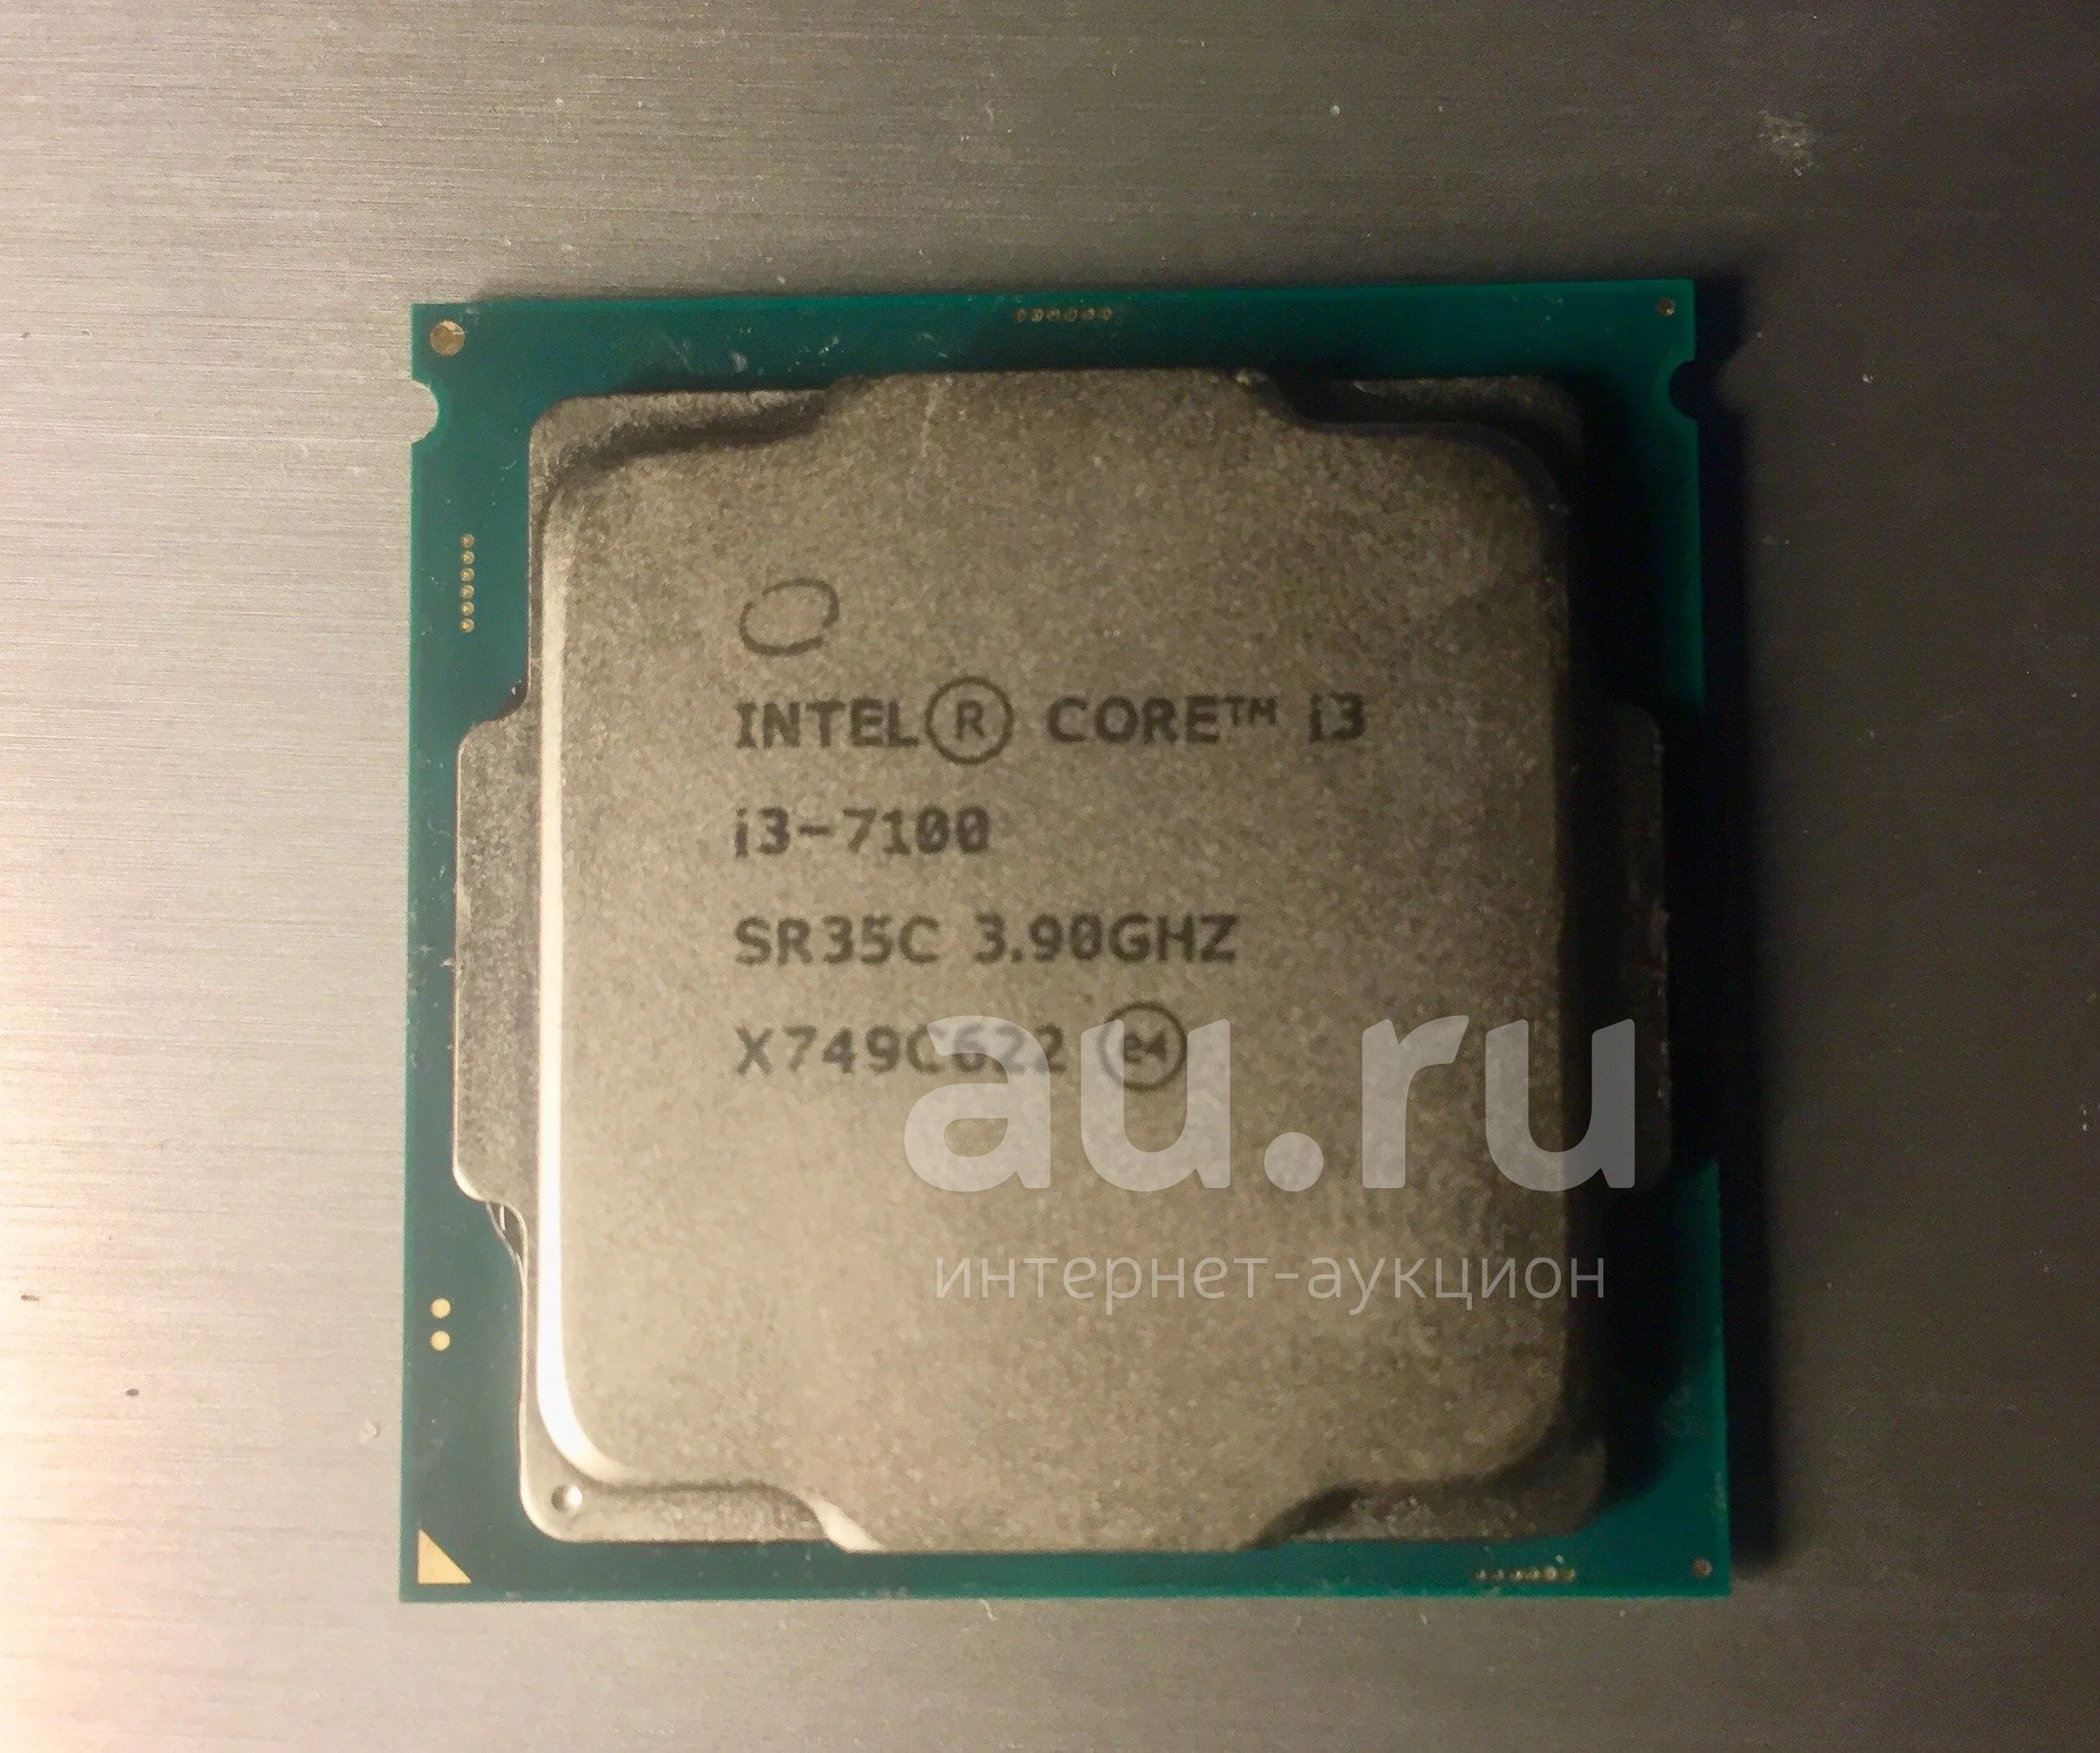 Интел 7100. Core i3 7100. Intel Core i3-7100. Processor Intel Core i3 7100. Процессор Intel Core i3-7100 Kaby Lake.